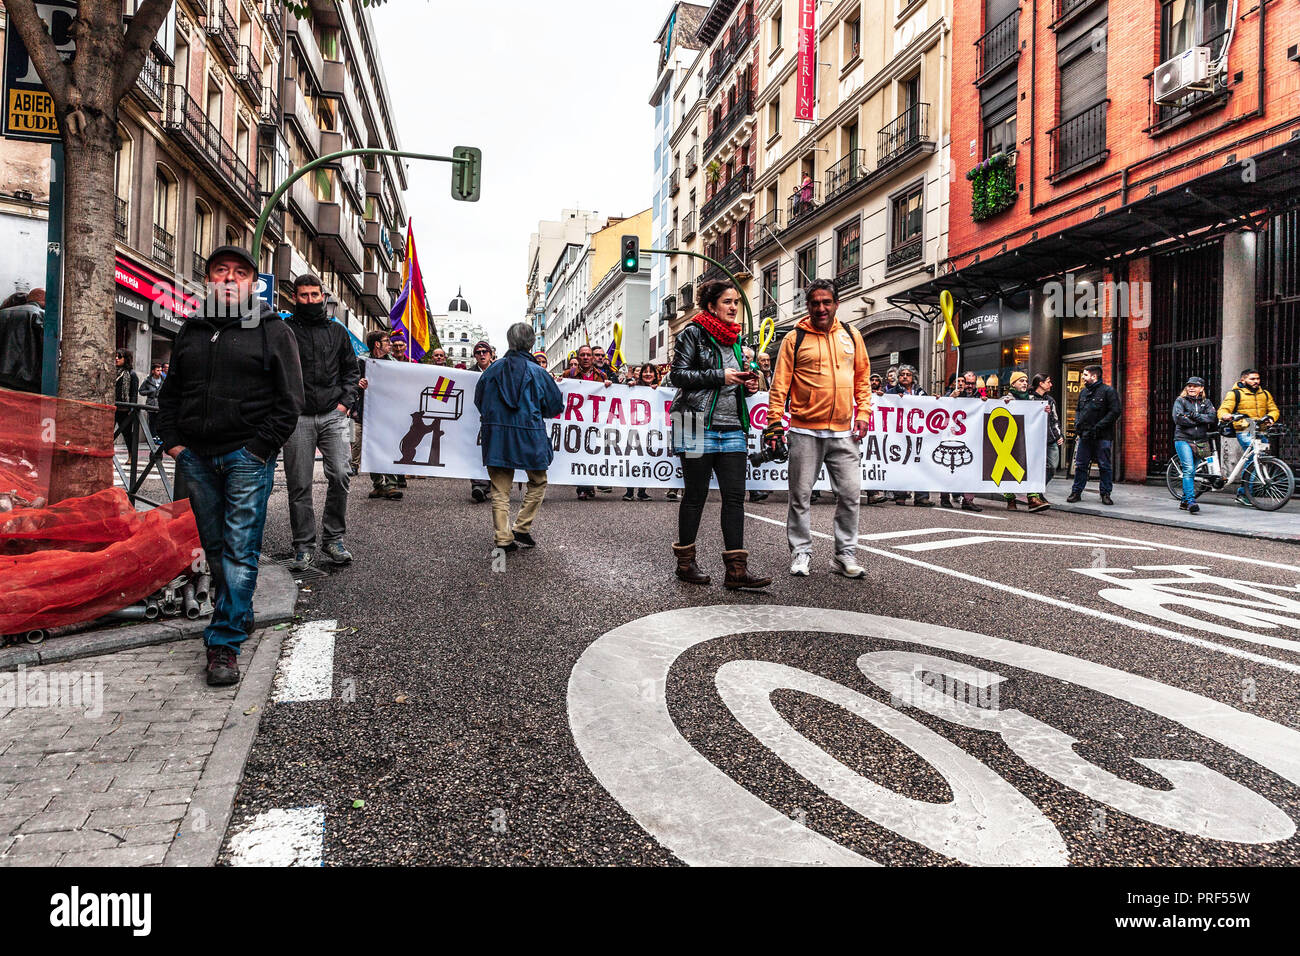 Multitudinaria manifestación exención libertad para clientes Políticos, Gran Vía, Madrid, España. Foto de stock